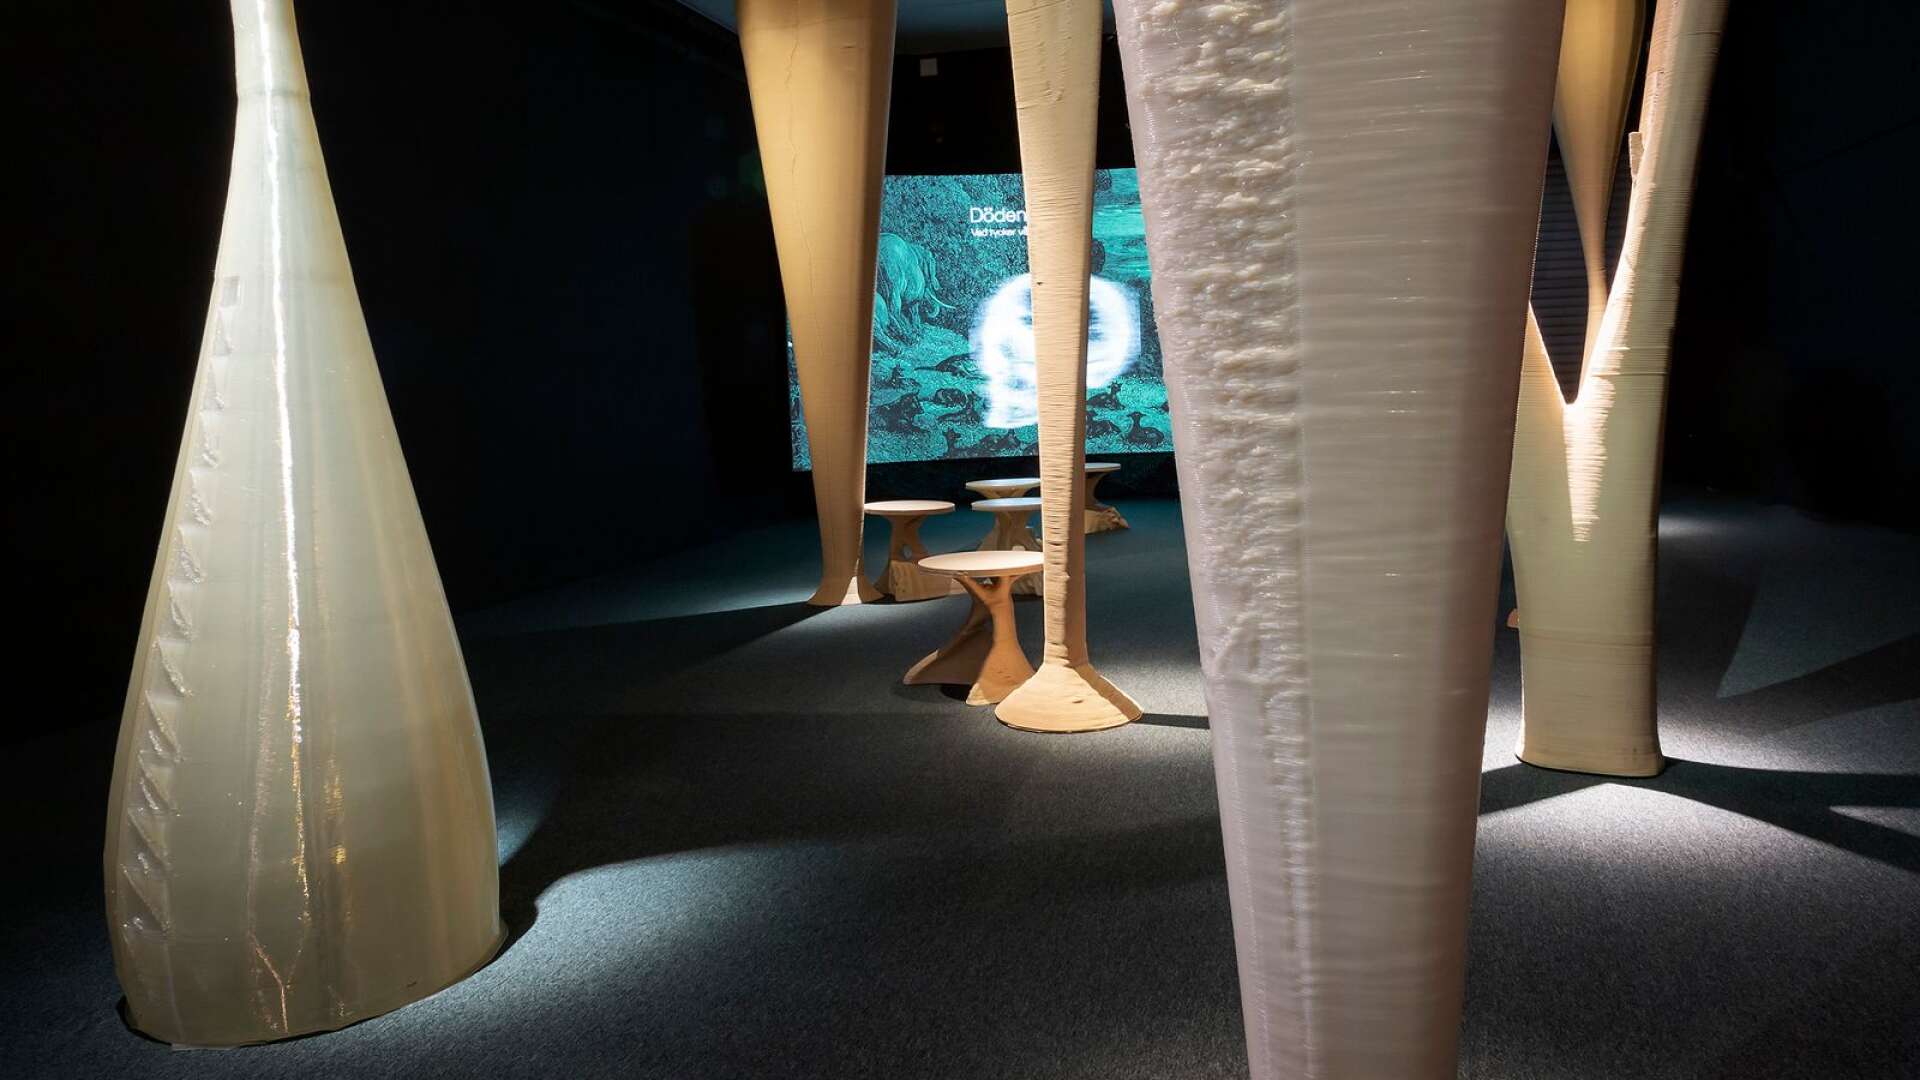 Böljande former uppstod när AI fick vara med och designa en del av Hyper Human-utställningen på Tekniska Museet i Stockholm.